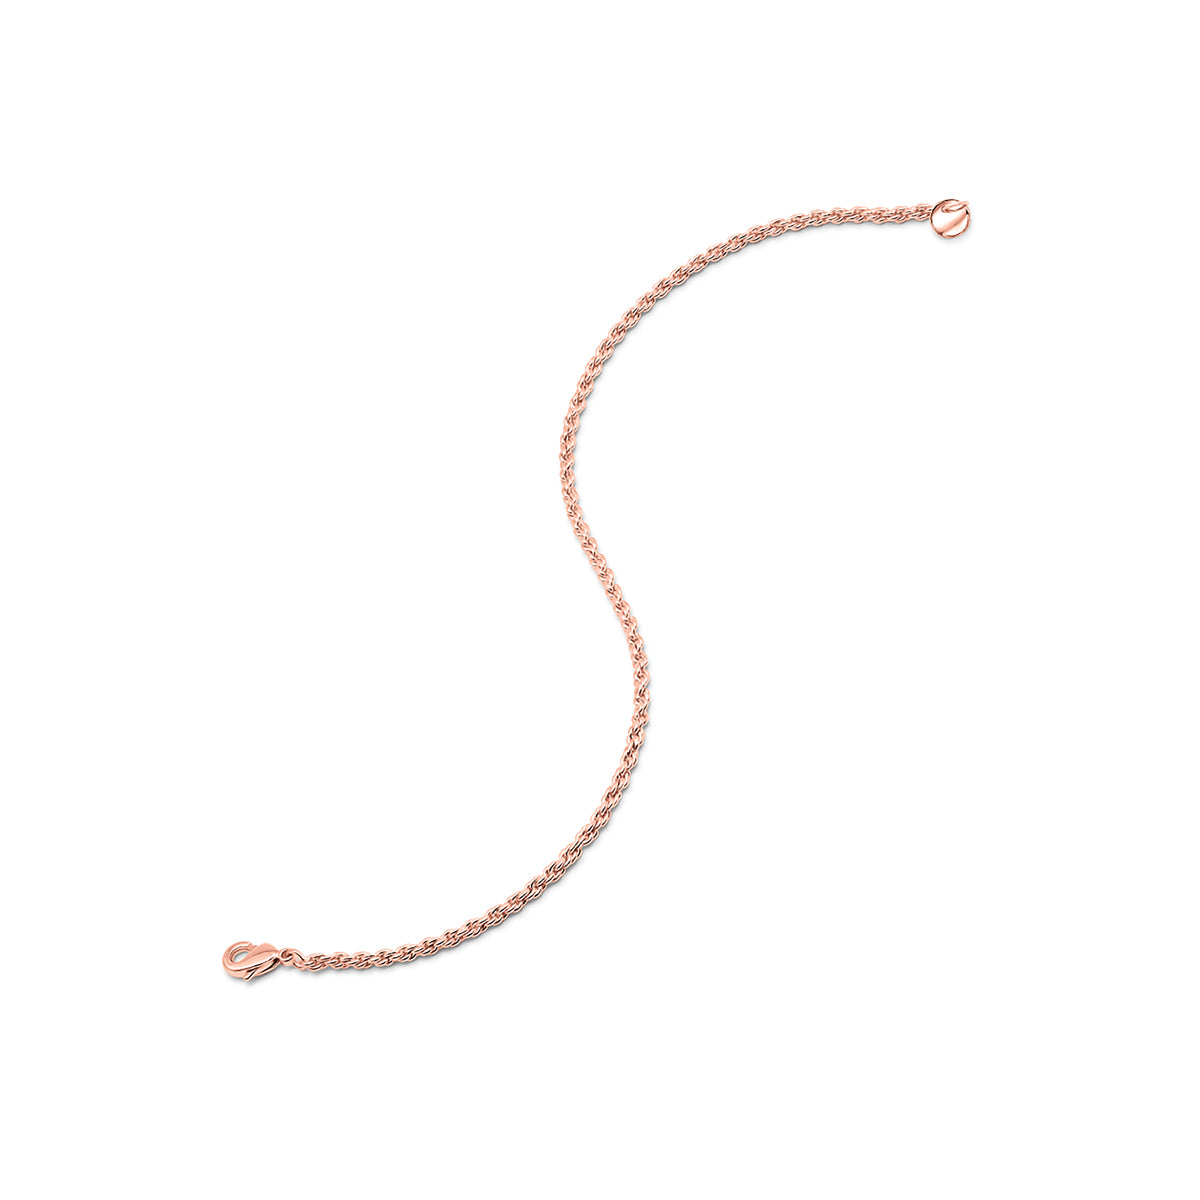 Unique rose gold rope chain bracelet